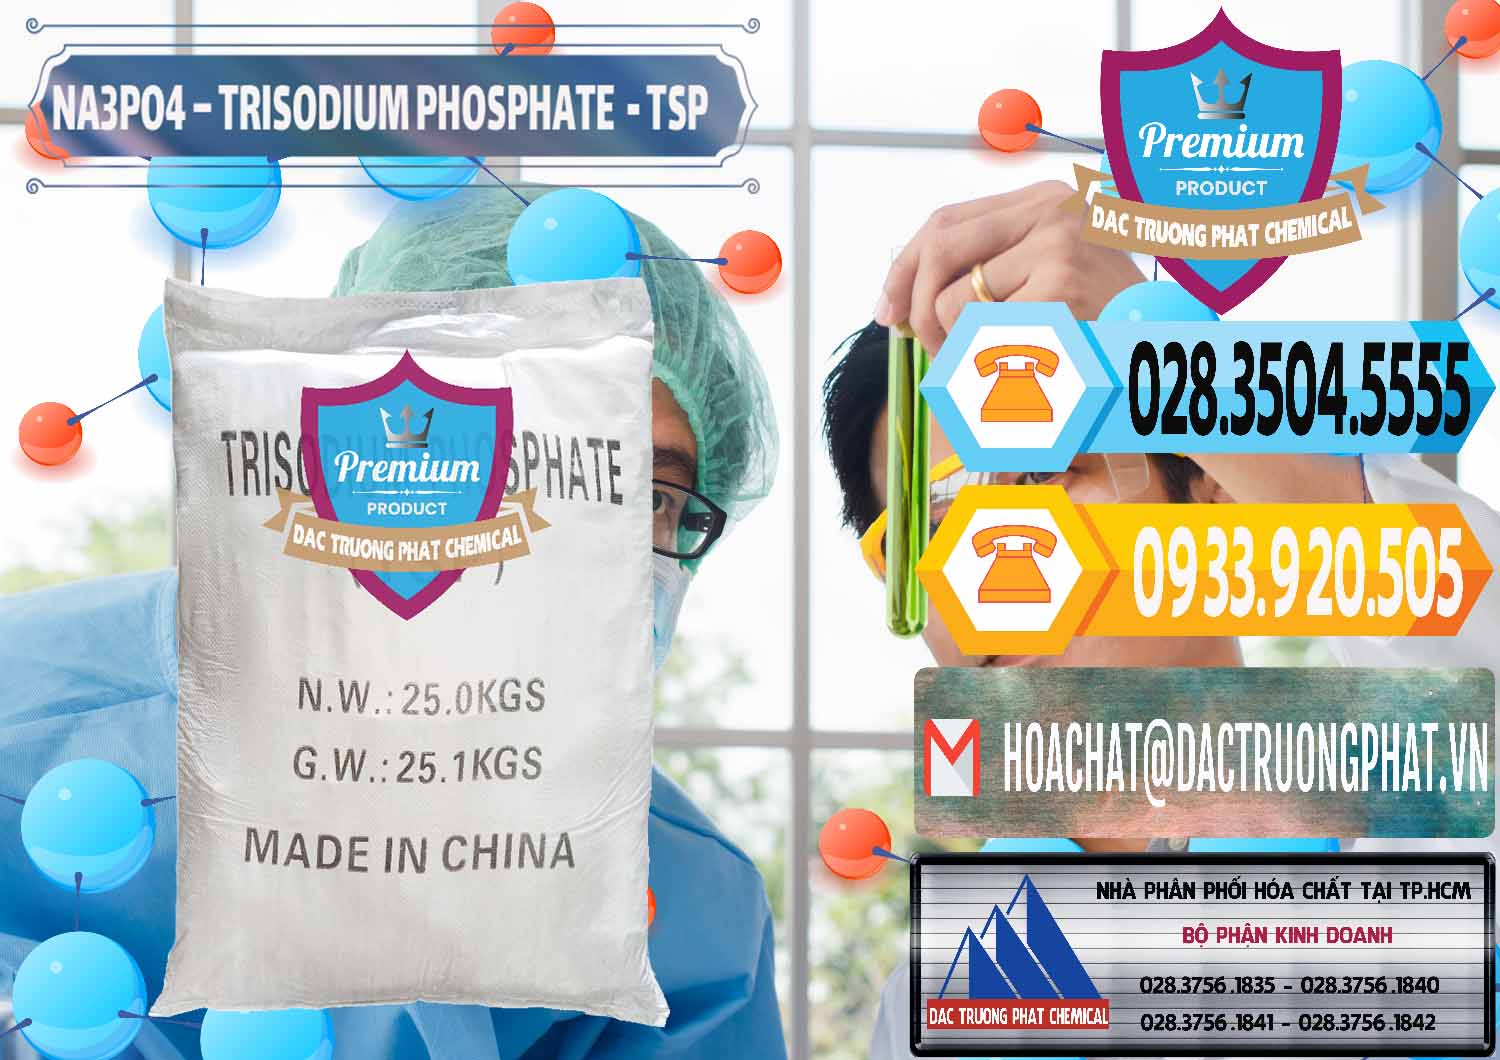 Đơn vị cung cấp & bán Na3PO4 – Trisodium Phosphate Trung Quốc China TSP - 0103 - Cty cung cấp - phân phối hóa chất tại TP.HCM - hoachattayrua.net